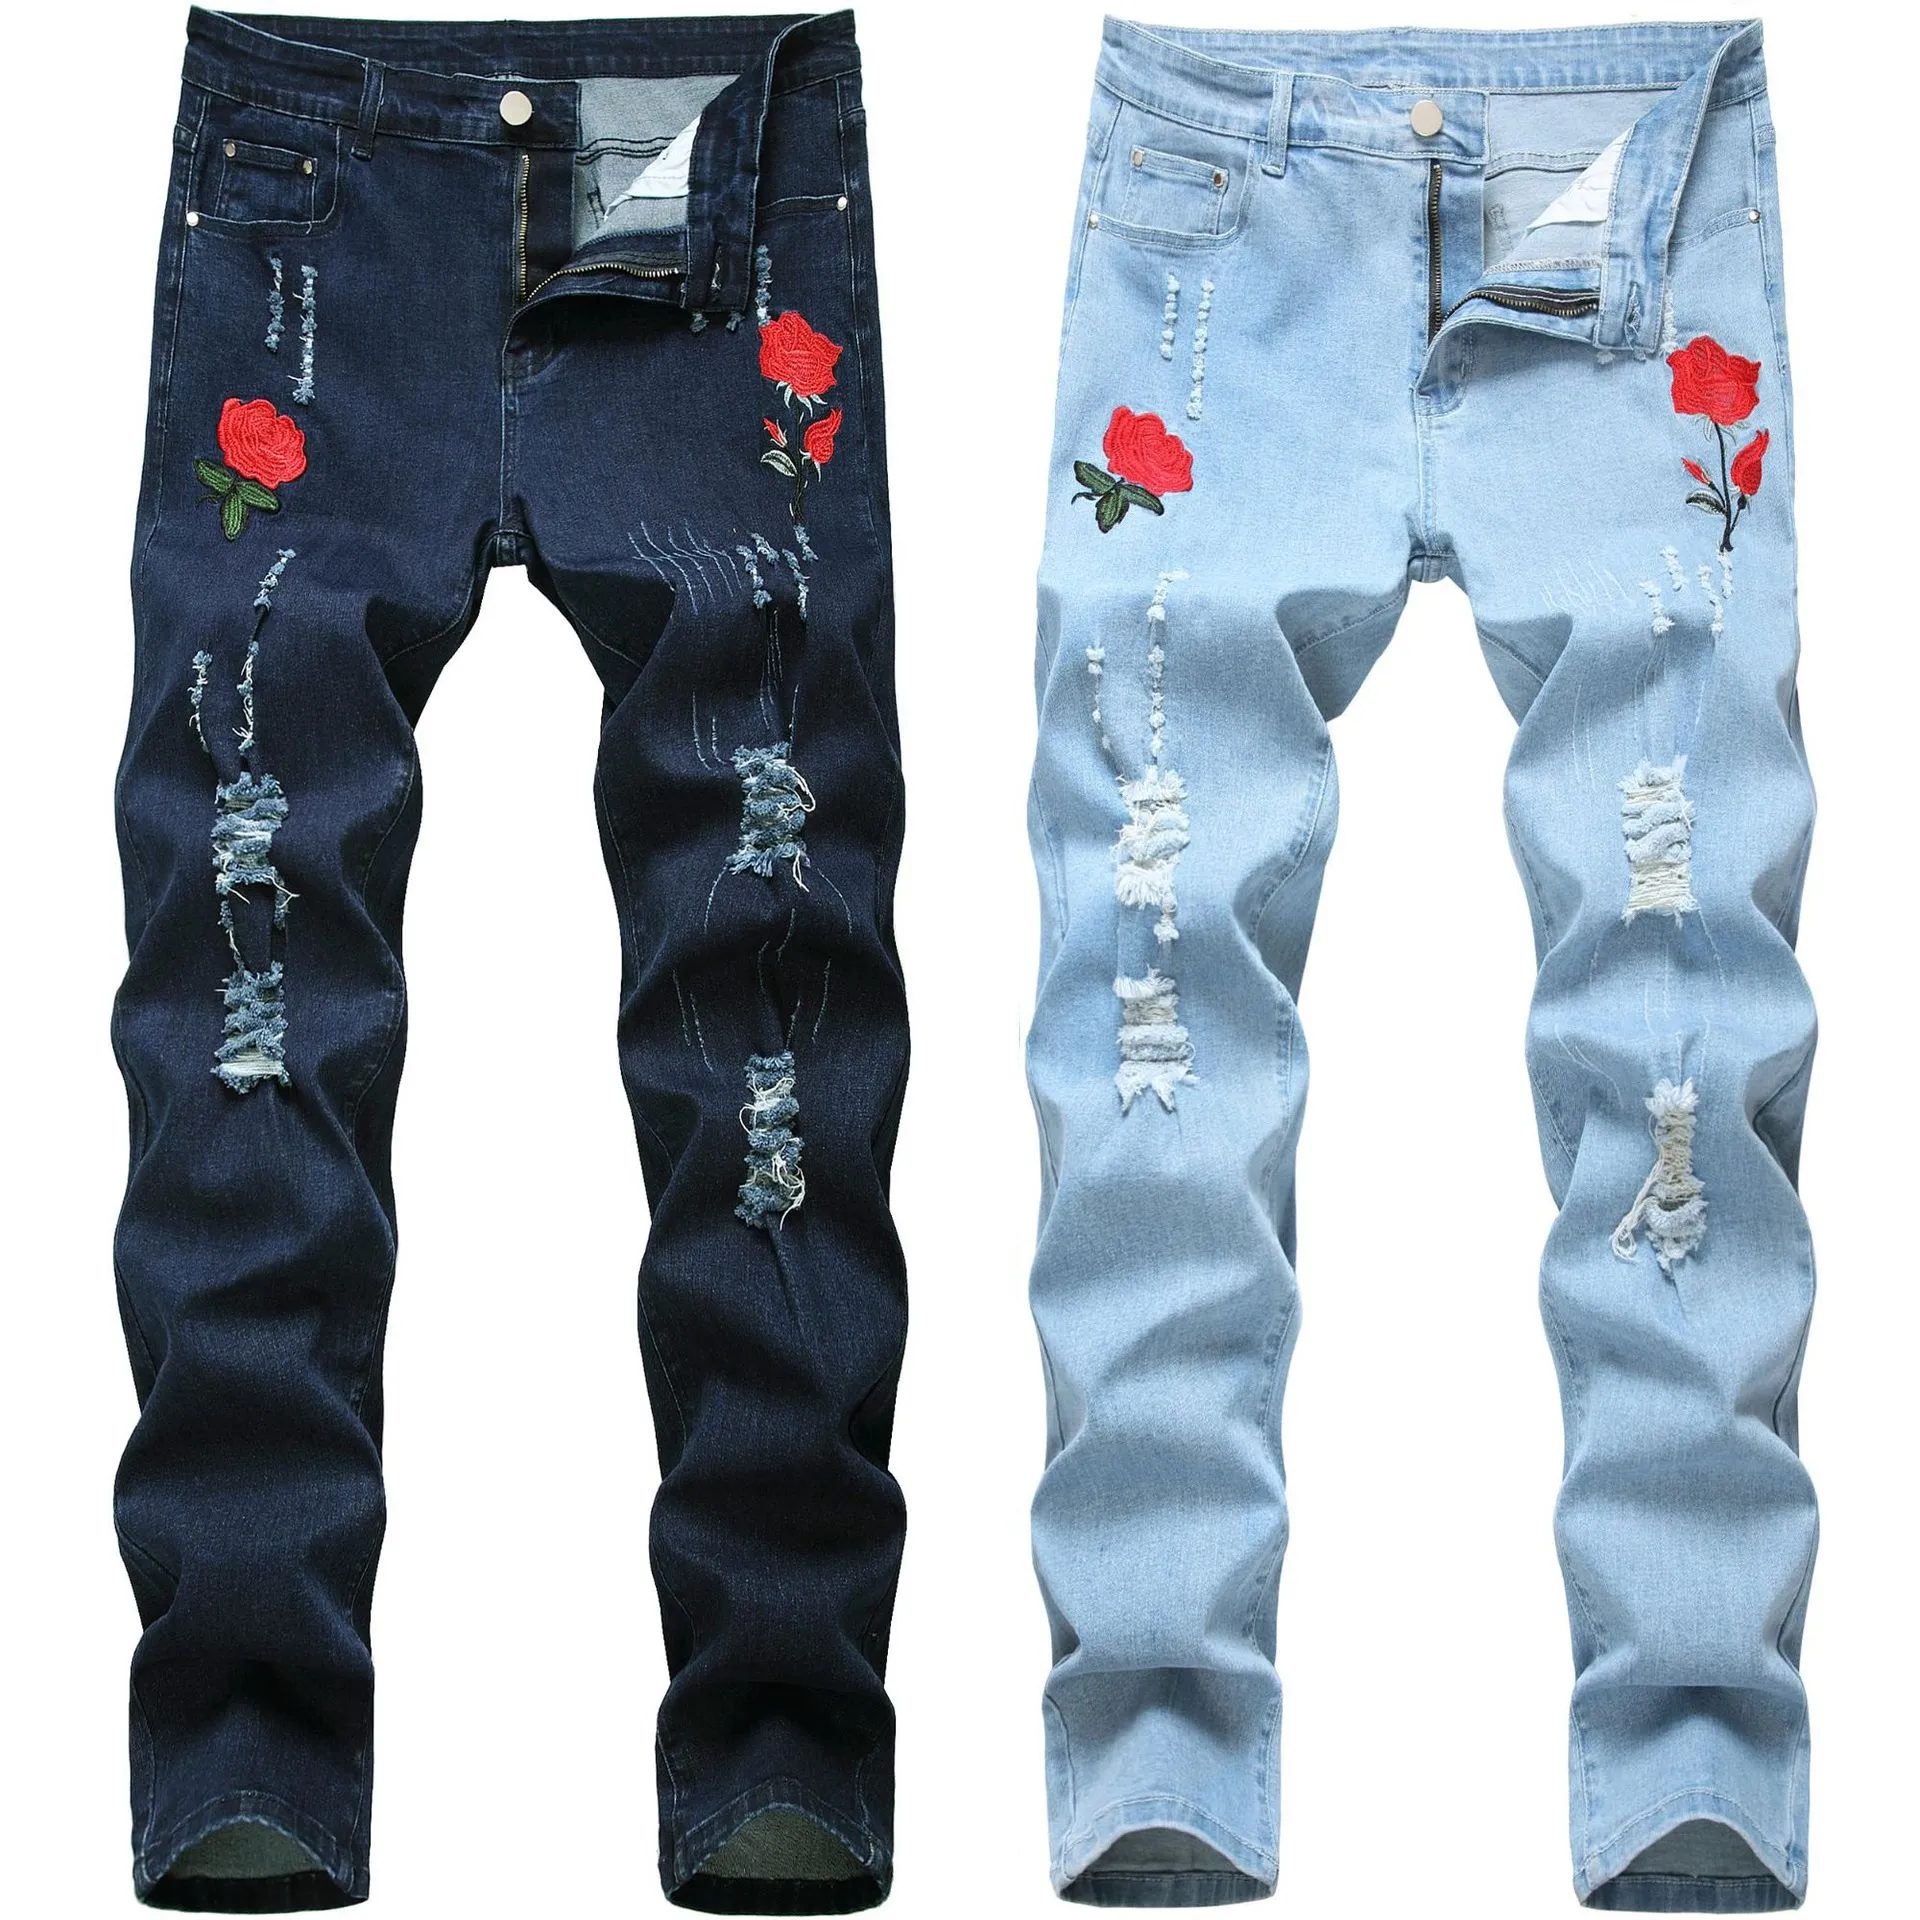 Men's Jeans Rose Embroidered For Men Designer Fashion Skinny Pencil Pants Holes Blue Denim Spring Autumn